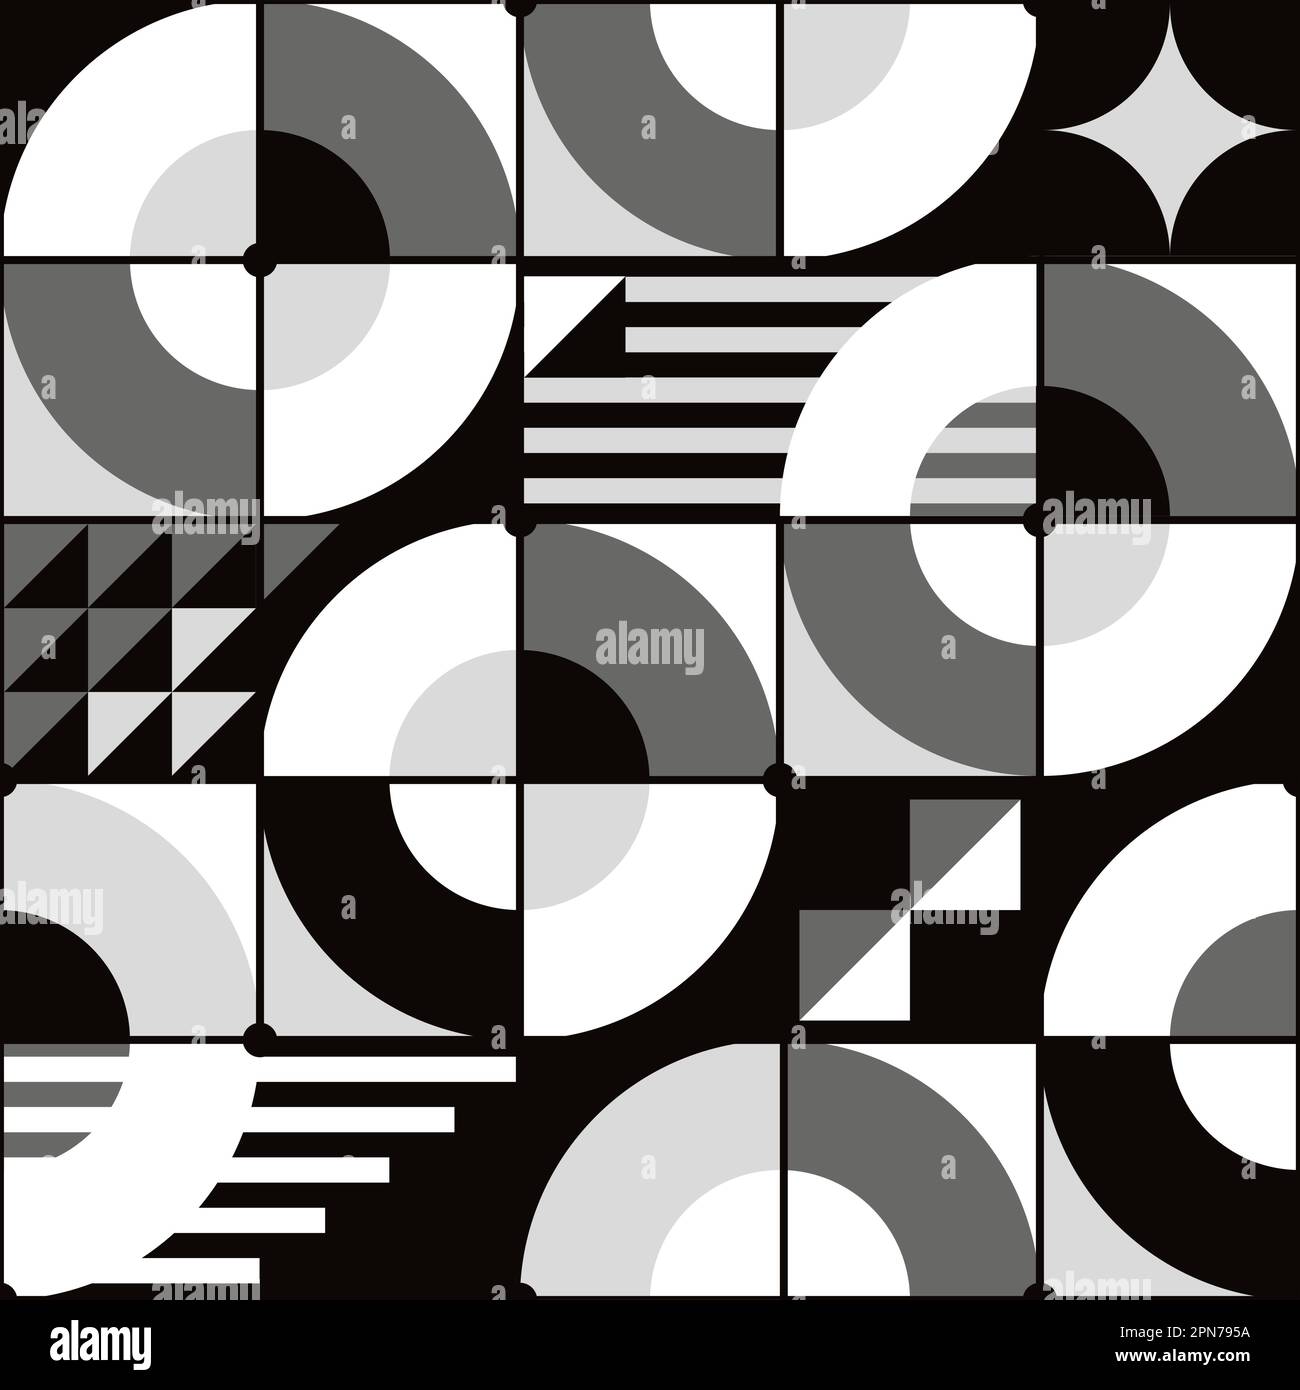 Von Bauhaus inspiriertes nahtloses Vektormuster in Schwarz, Grau und Weiß - geometrisches Retro-Design mit Kreisen, Dreiecken, Linien und Quadraten Stock Vektor